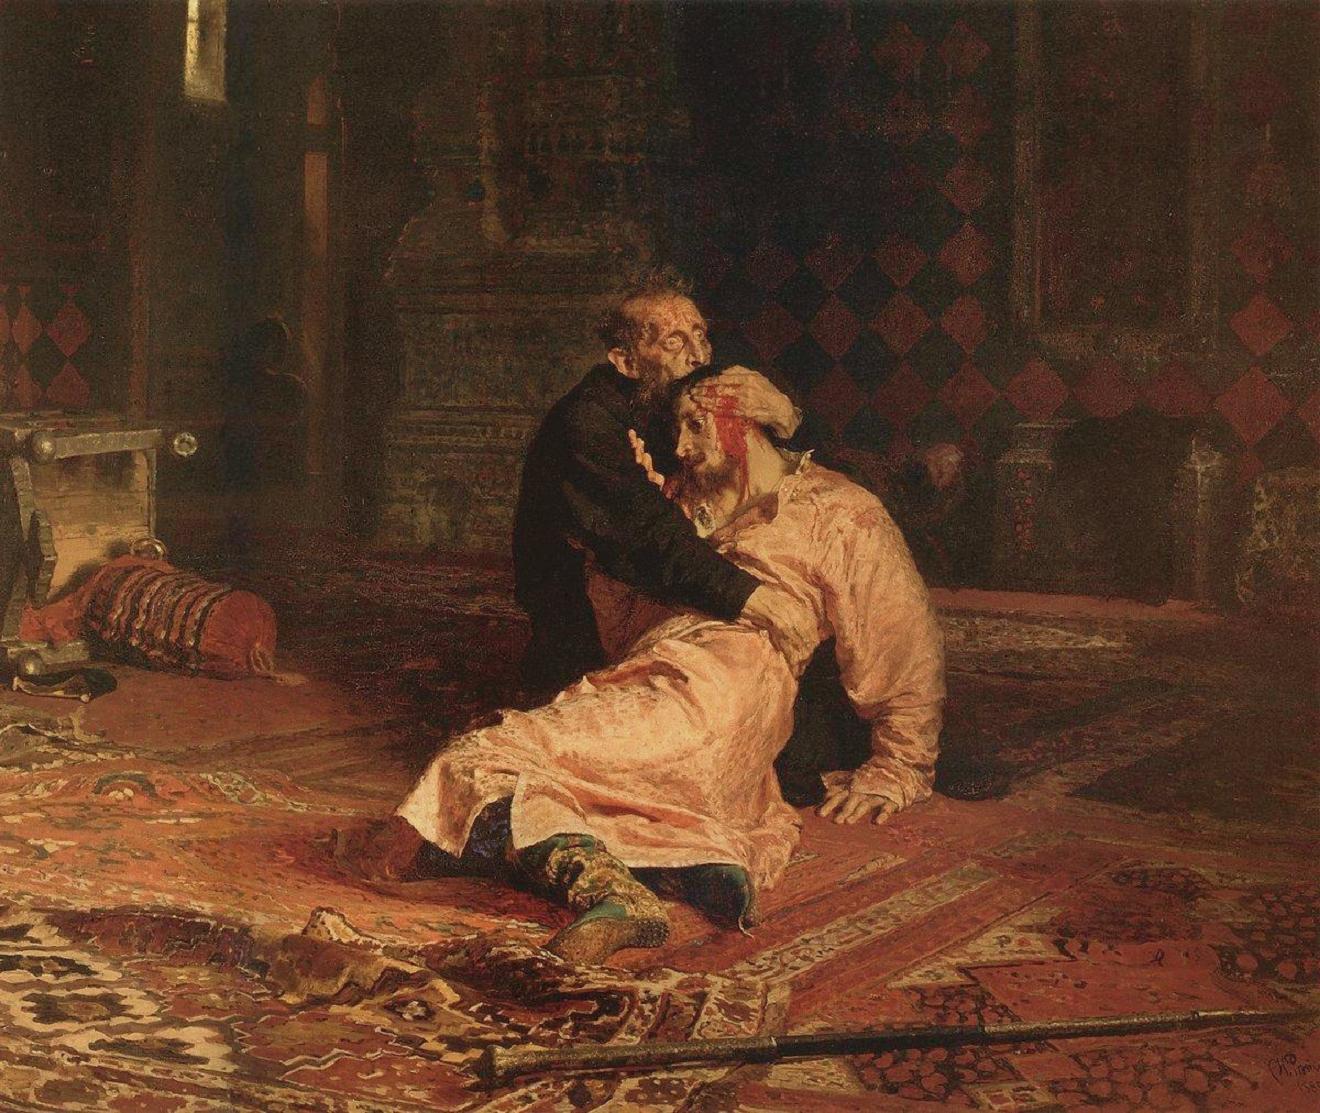 Tsar Ivan Grozny Kills his Son by Ilya Repin / Tretyakov Gallery